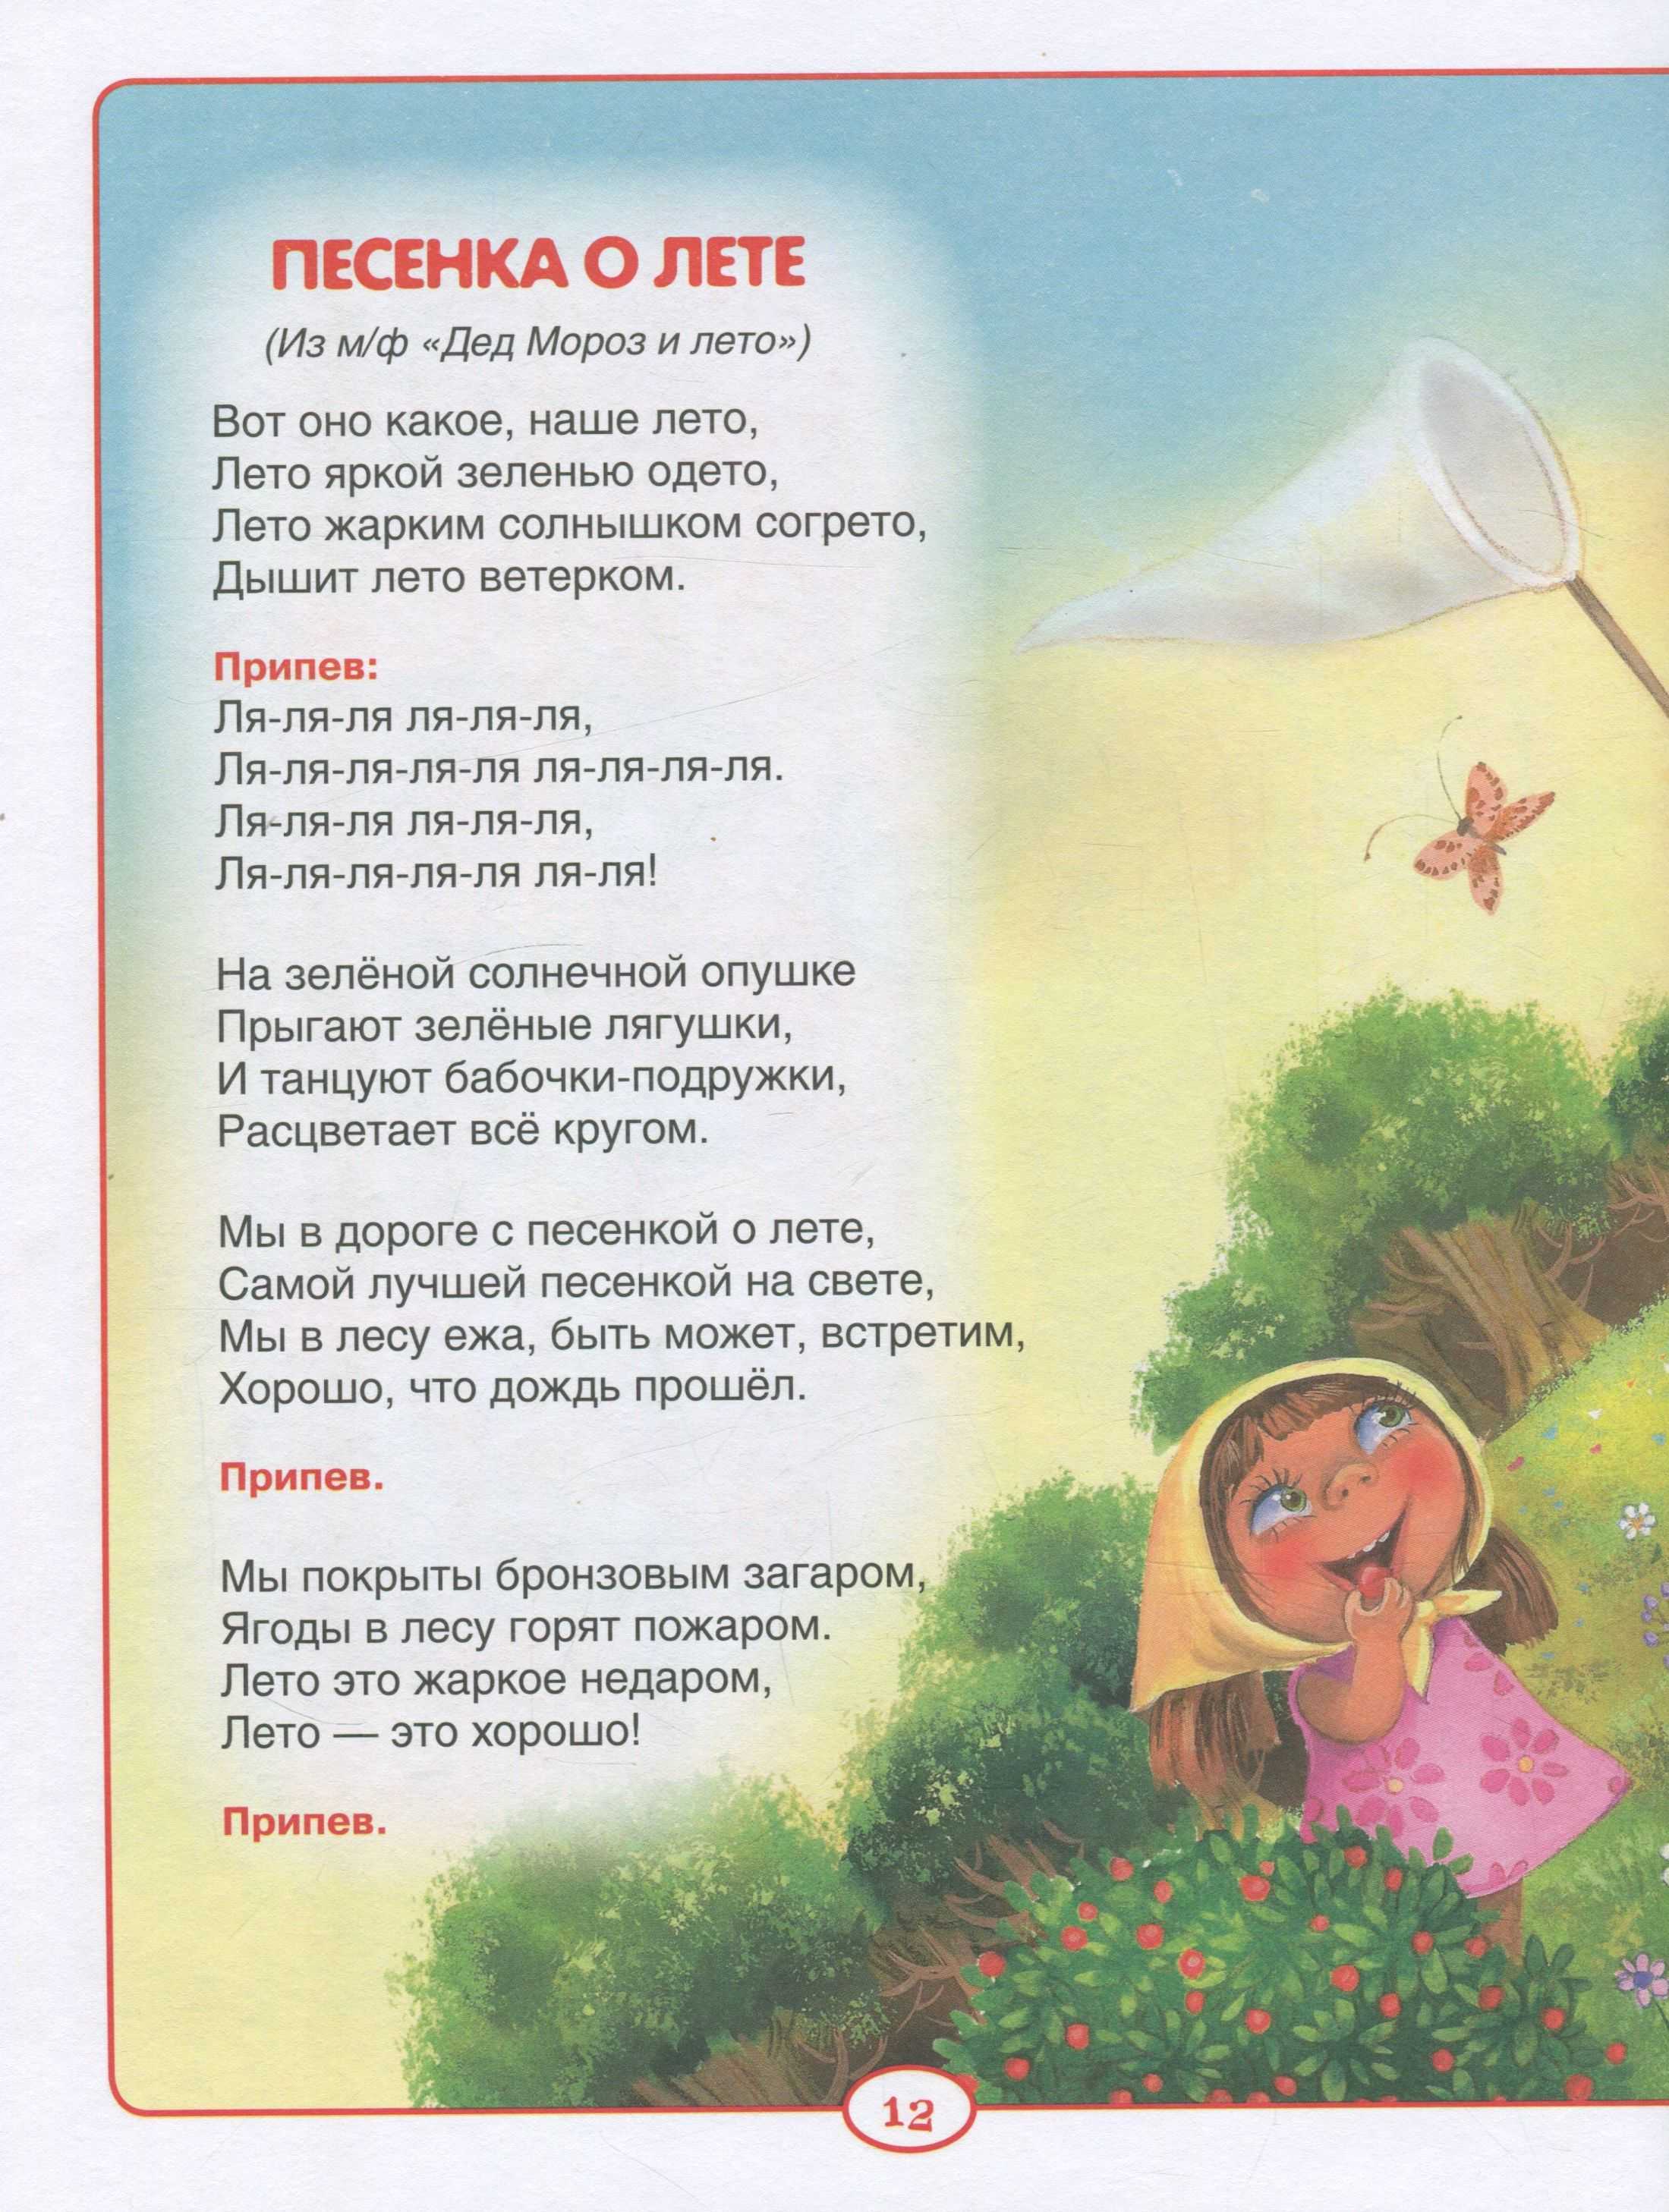 Подборка детских песен из советских мультфильмов (часть 2)